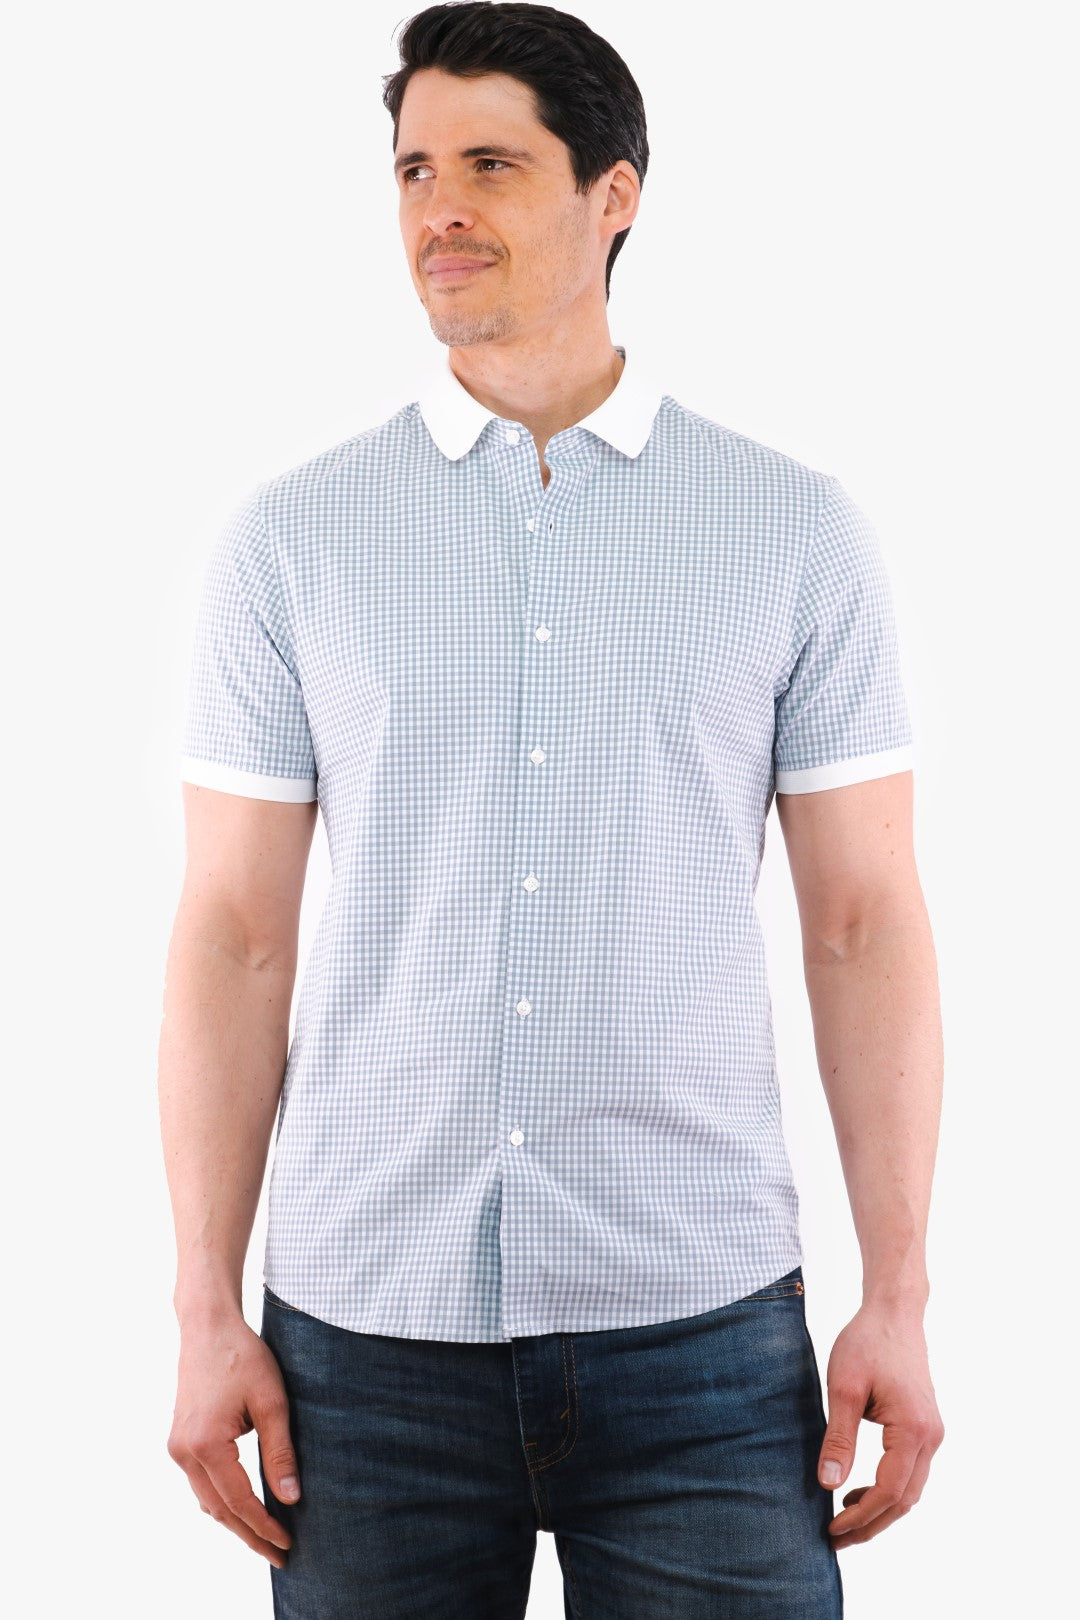 Boutique Option-Michael Kors Chambray Shirt(Kors-Cr1400B3Aw-436)